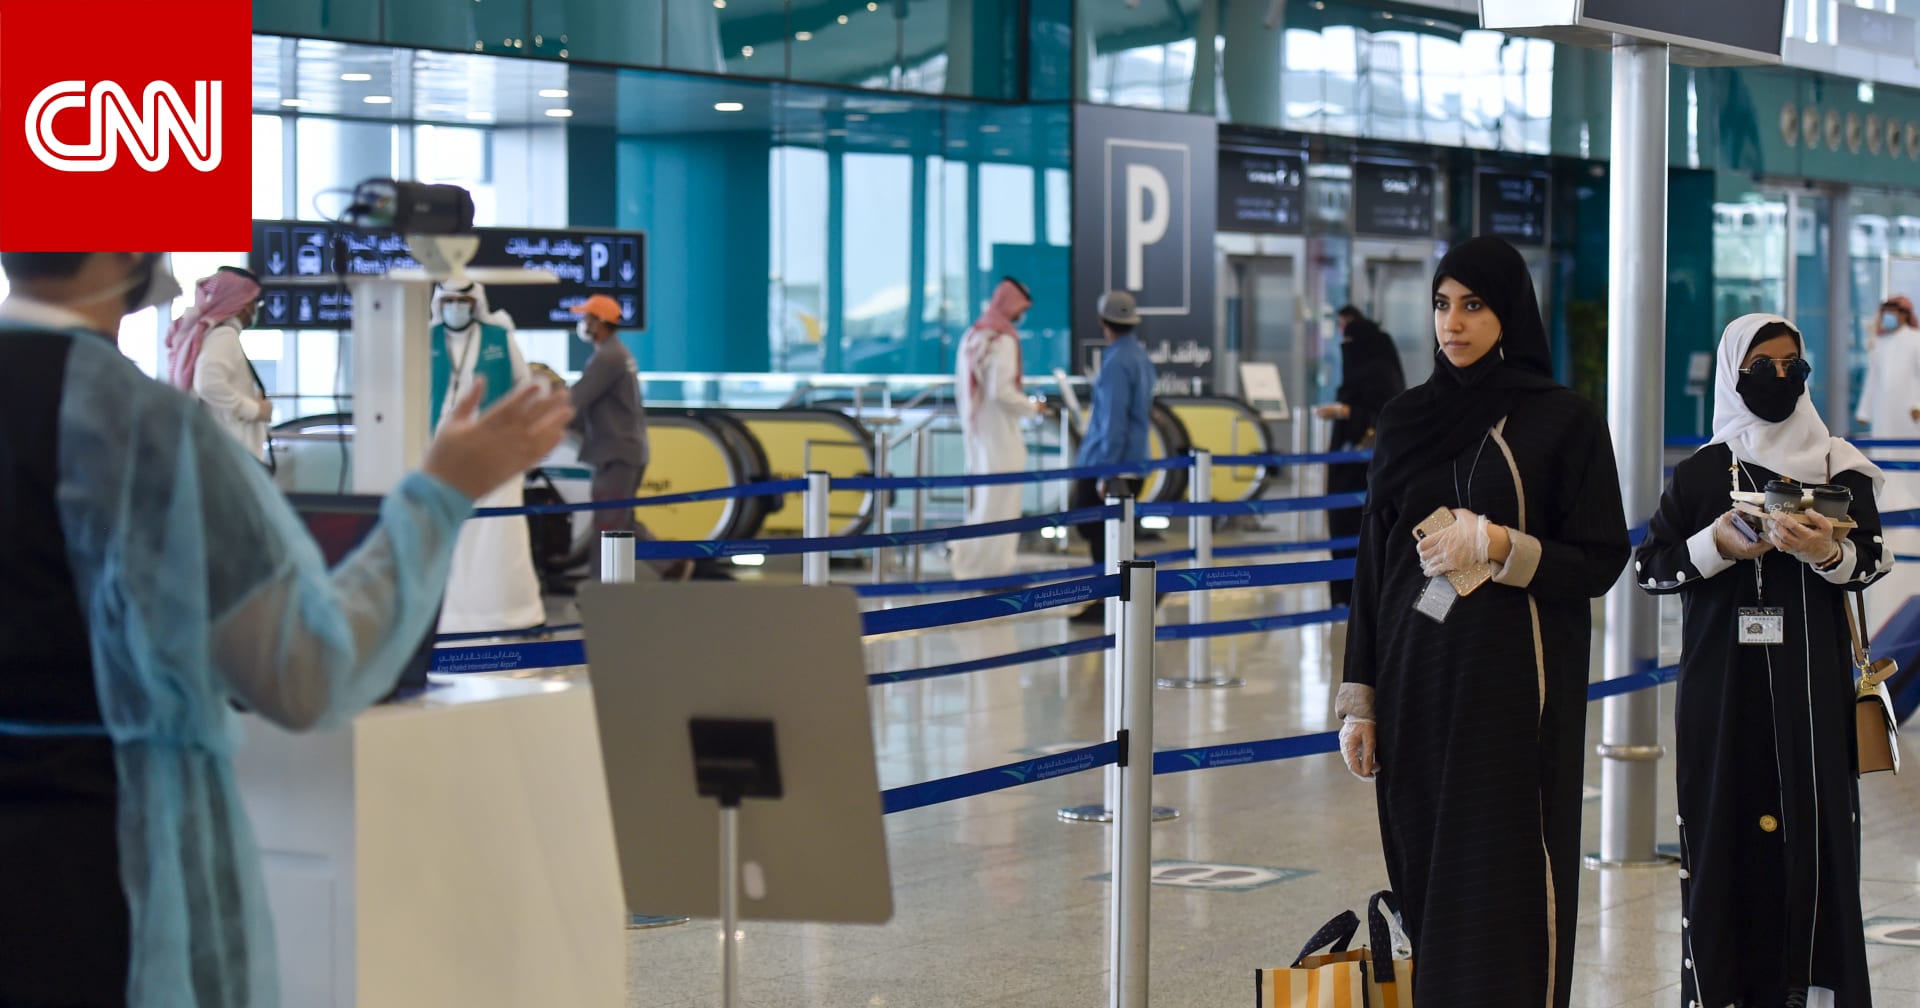 السفر للسعوديين فتح موعد رسميا موعد